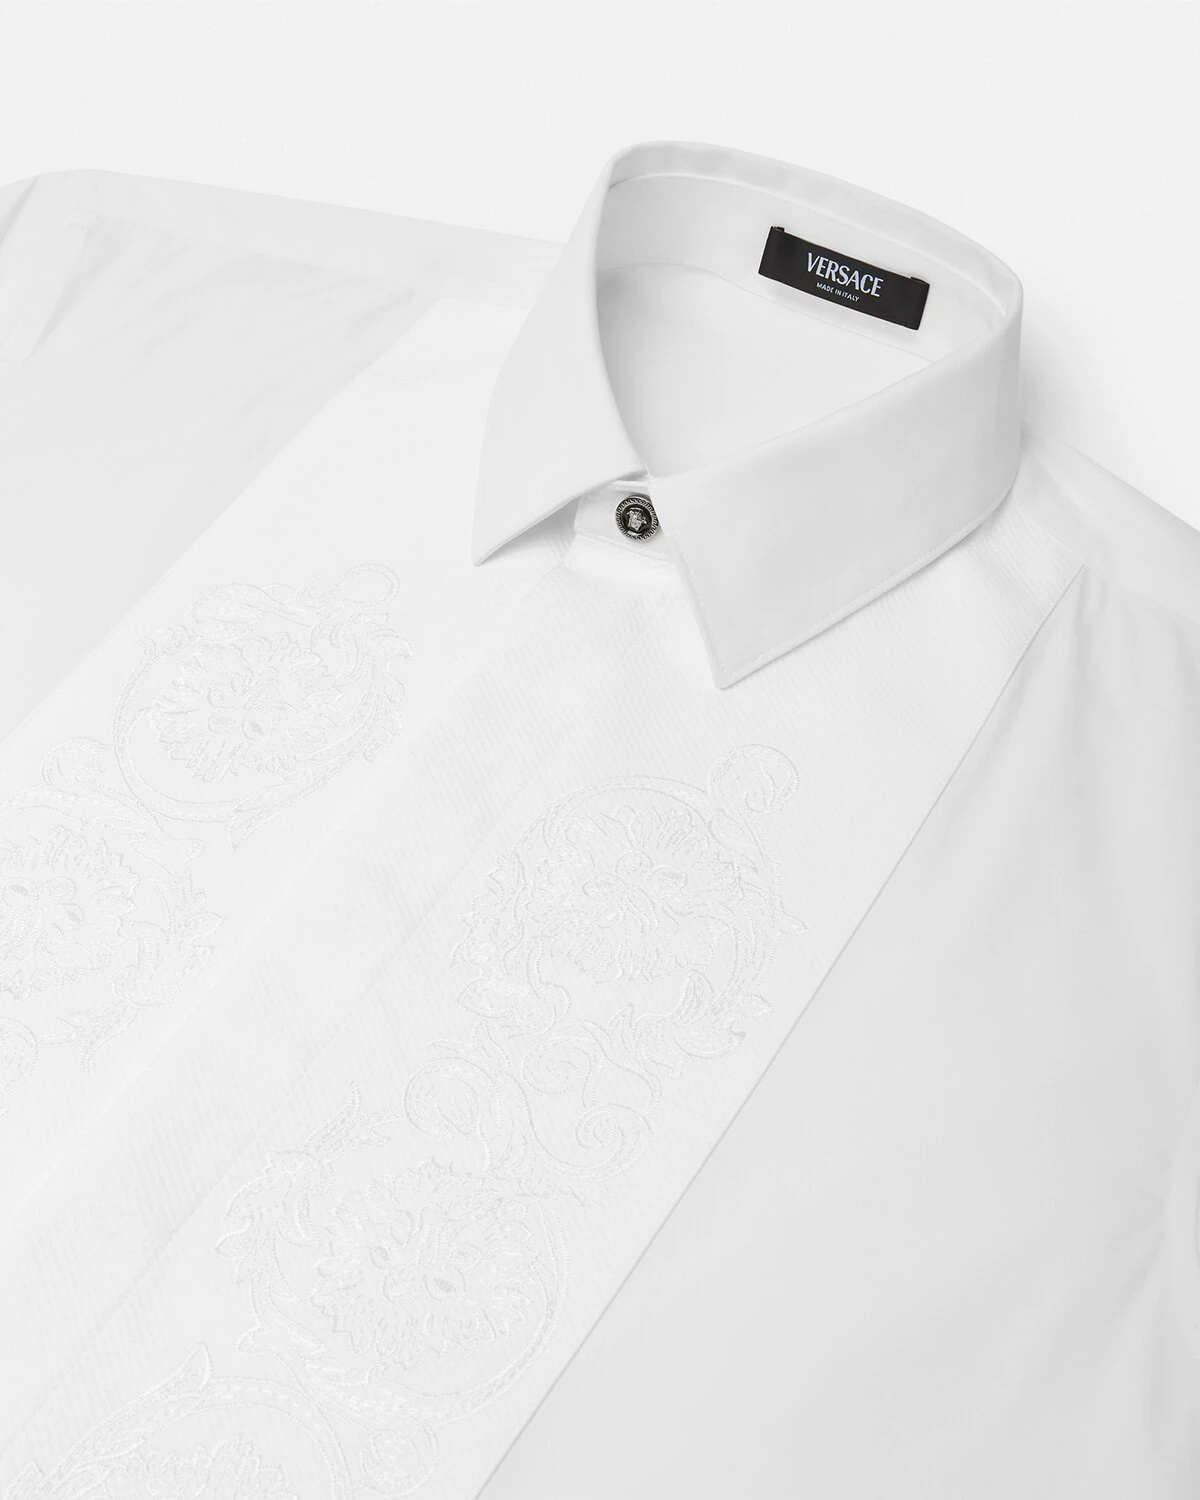 Barocco Formal Shirt - 6